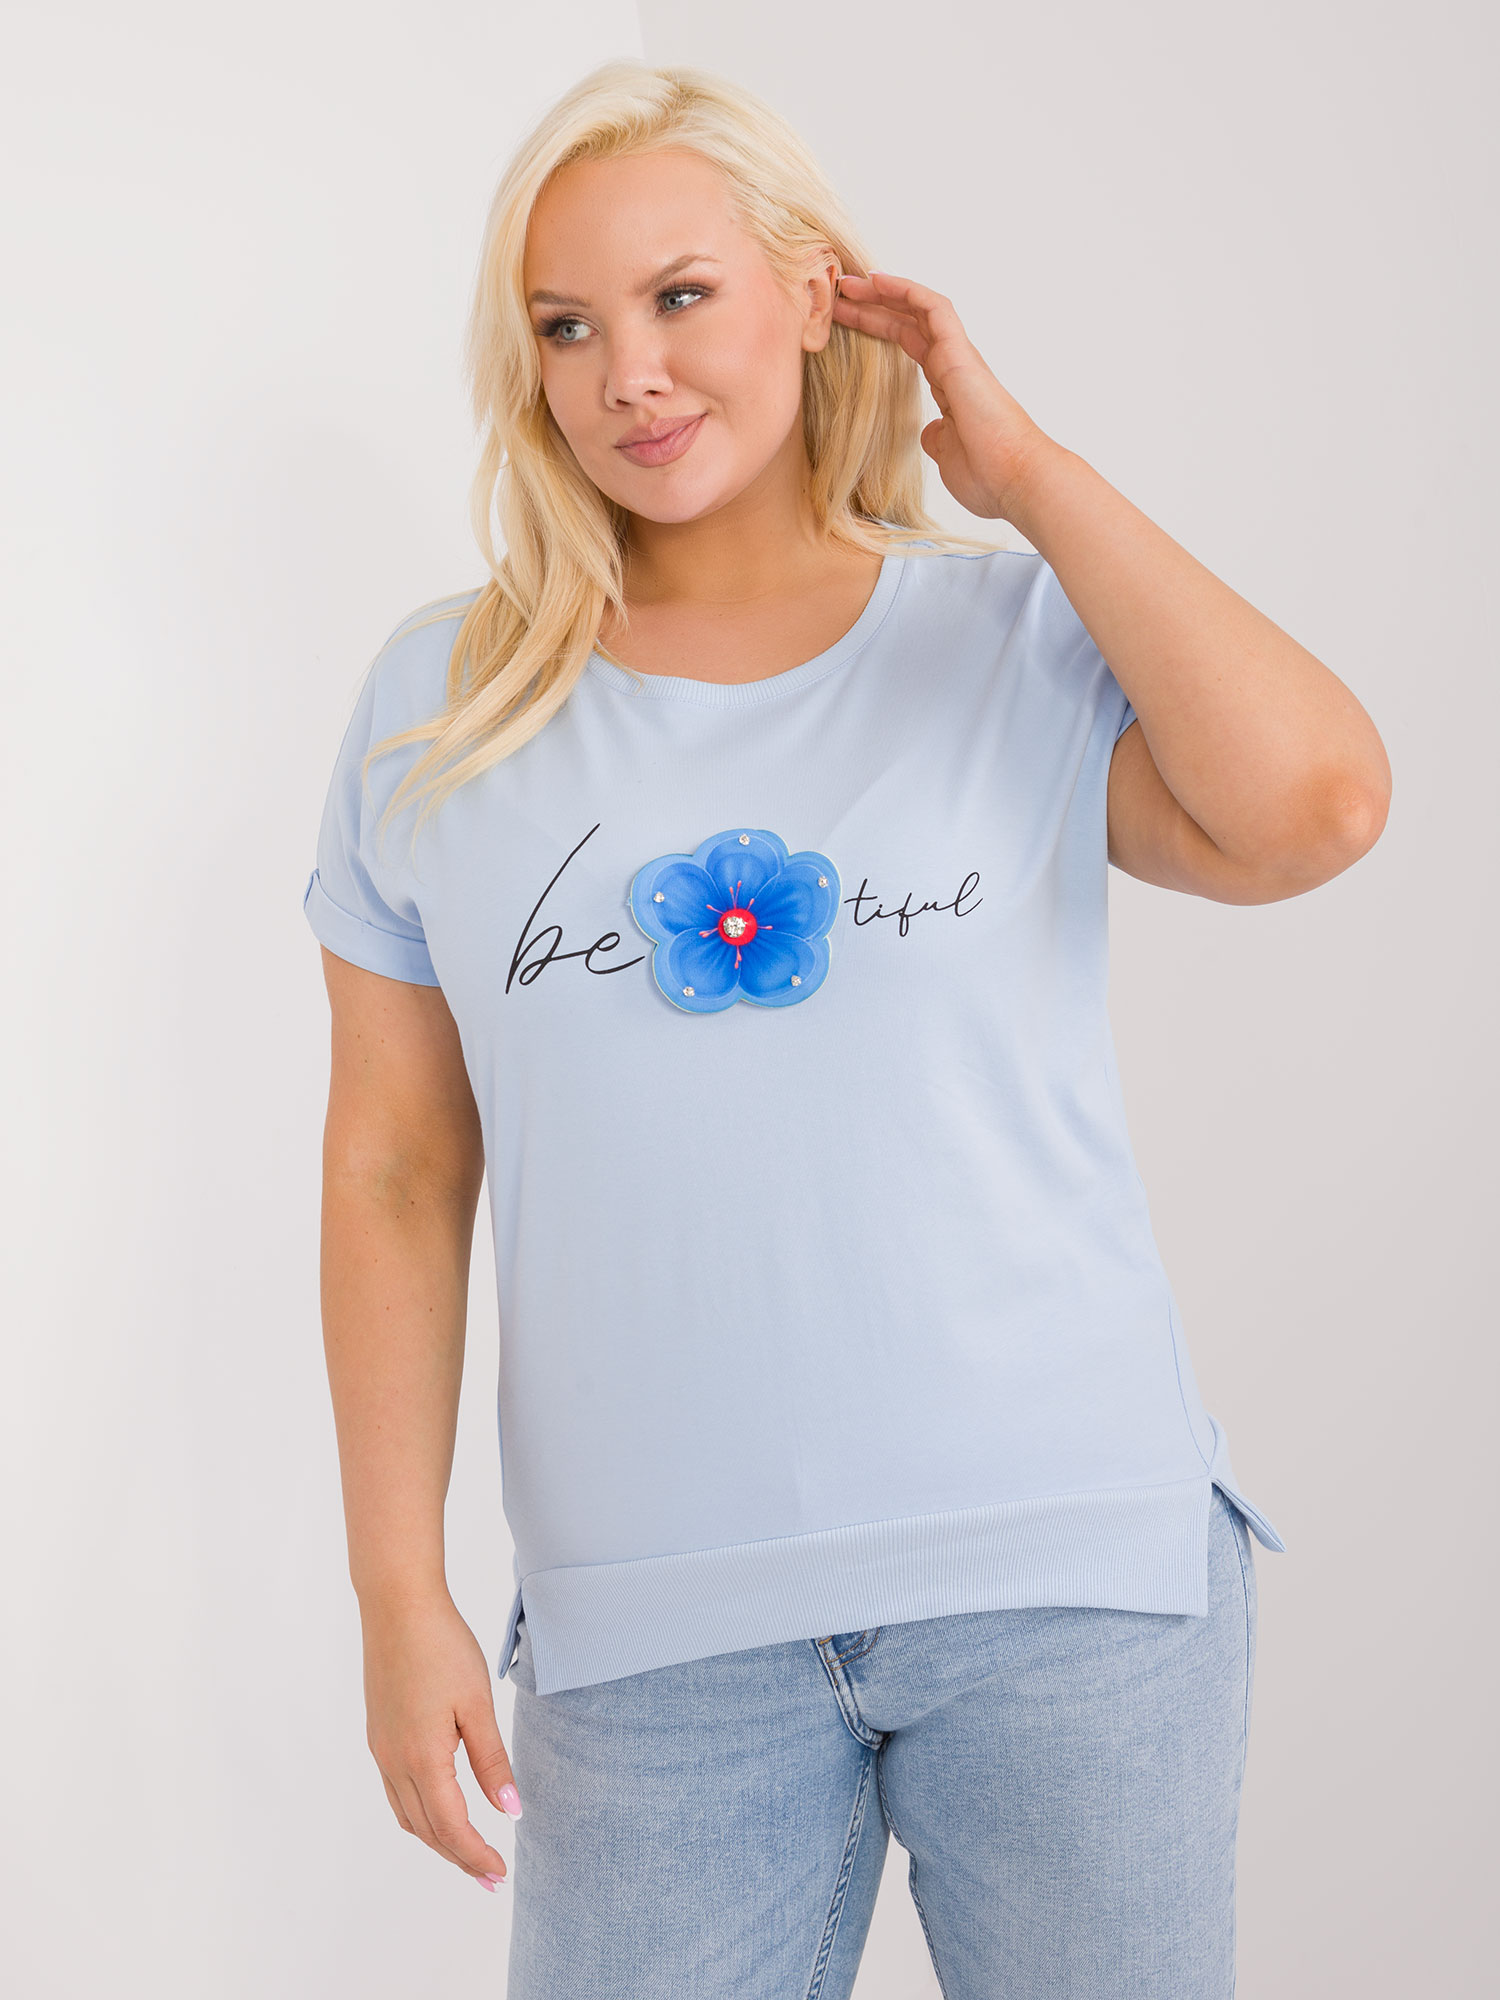 Světle modré tričko s aplikací květiny -RV-BZ-9608.93-light blue Velikost: ONE SIZE